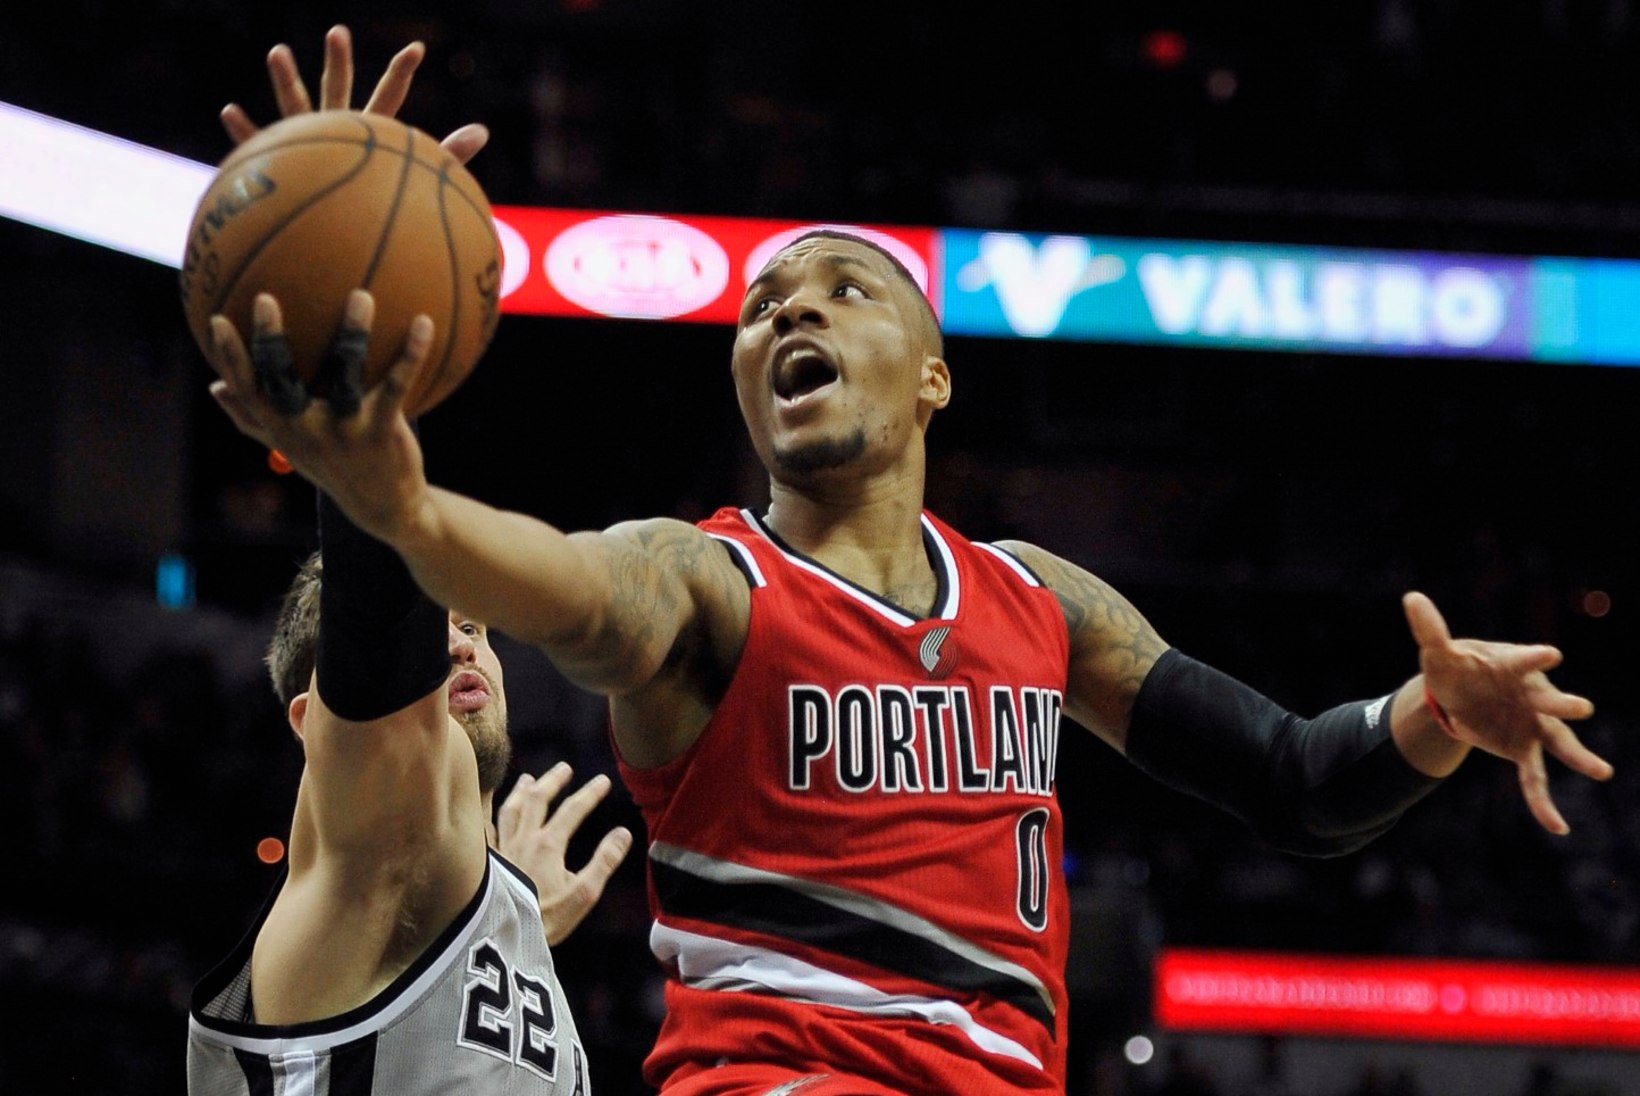 VIDEO: hull mäng NBAs! Trail Blazers ja Spurs selgitasid võitja alles kolmandal lisaajal